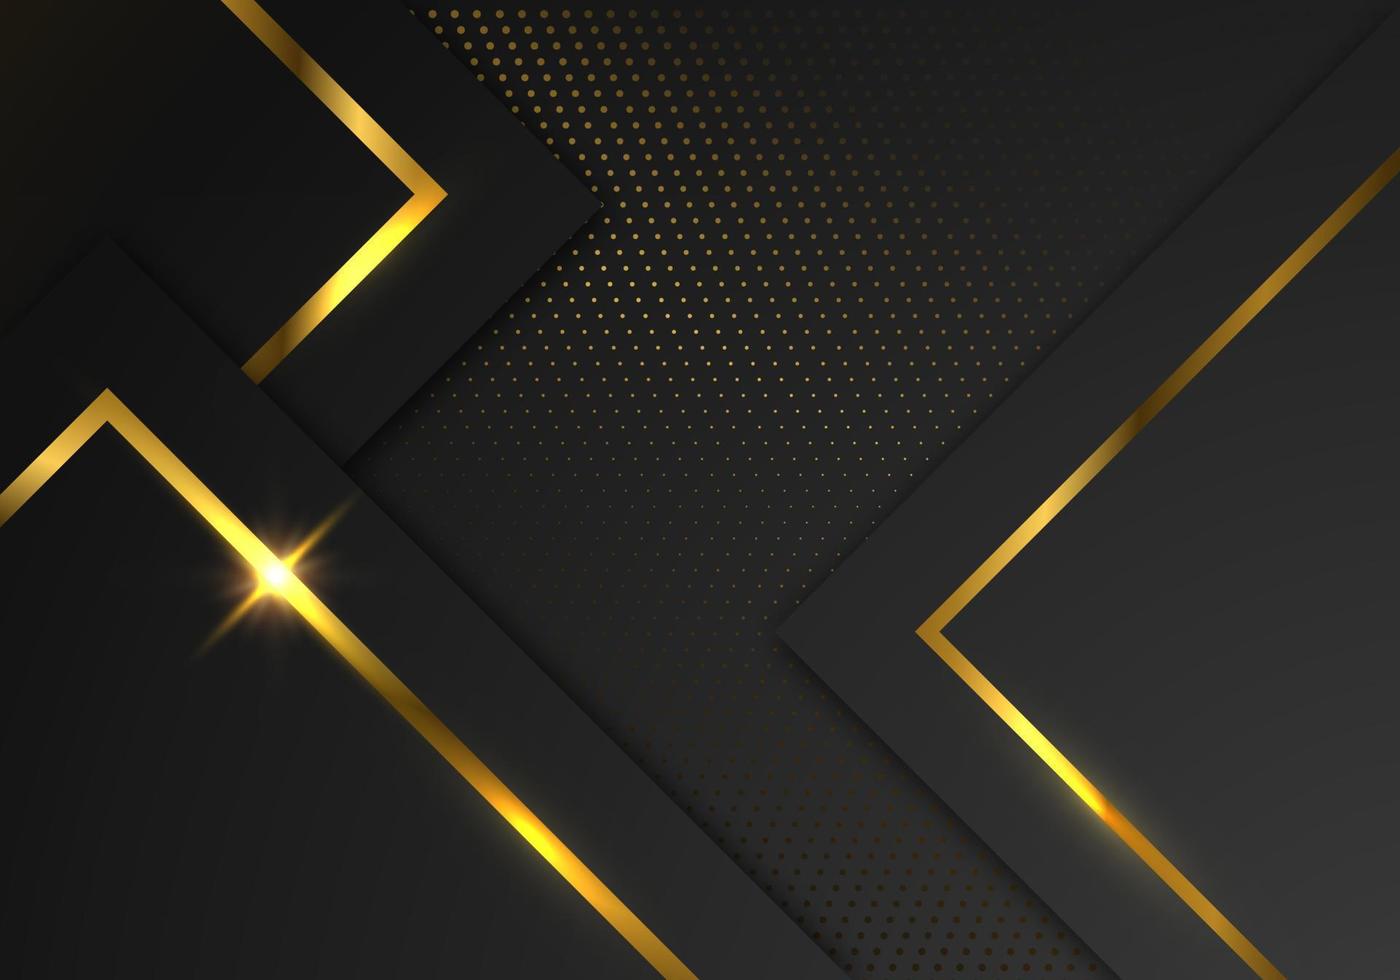 capas de superposición geométrica negra premium abstracta con estilo de lujo de línea dorada de rayas sobre fondo oscuro con espacio de copia vector